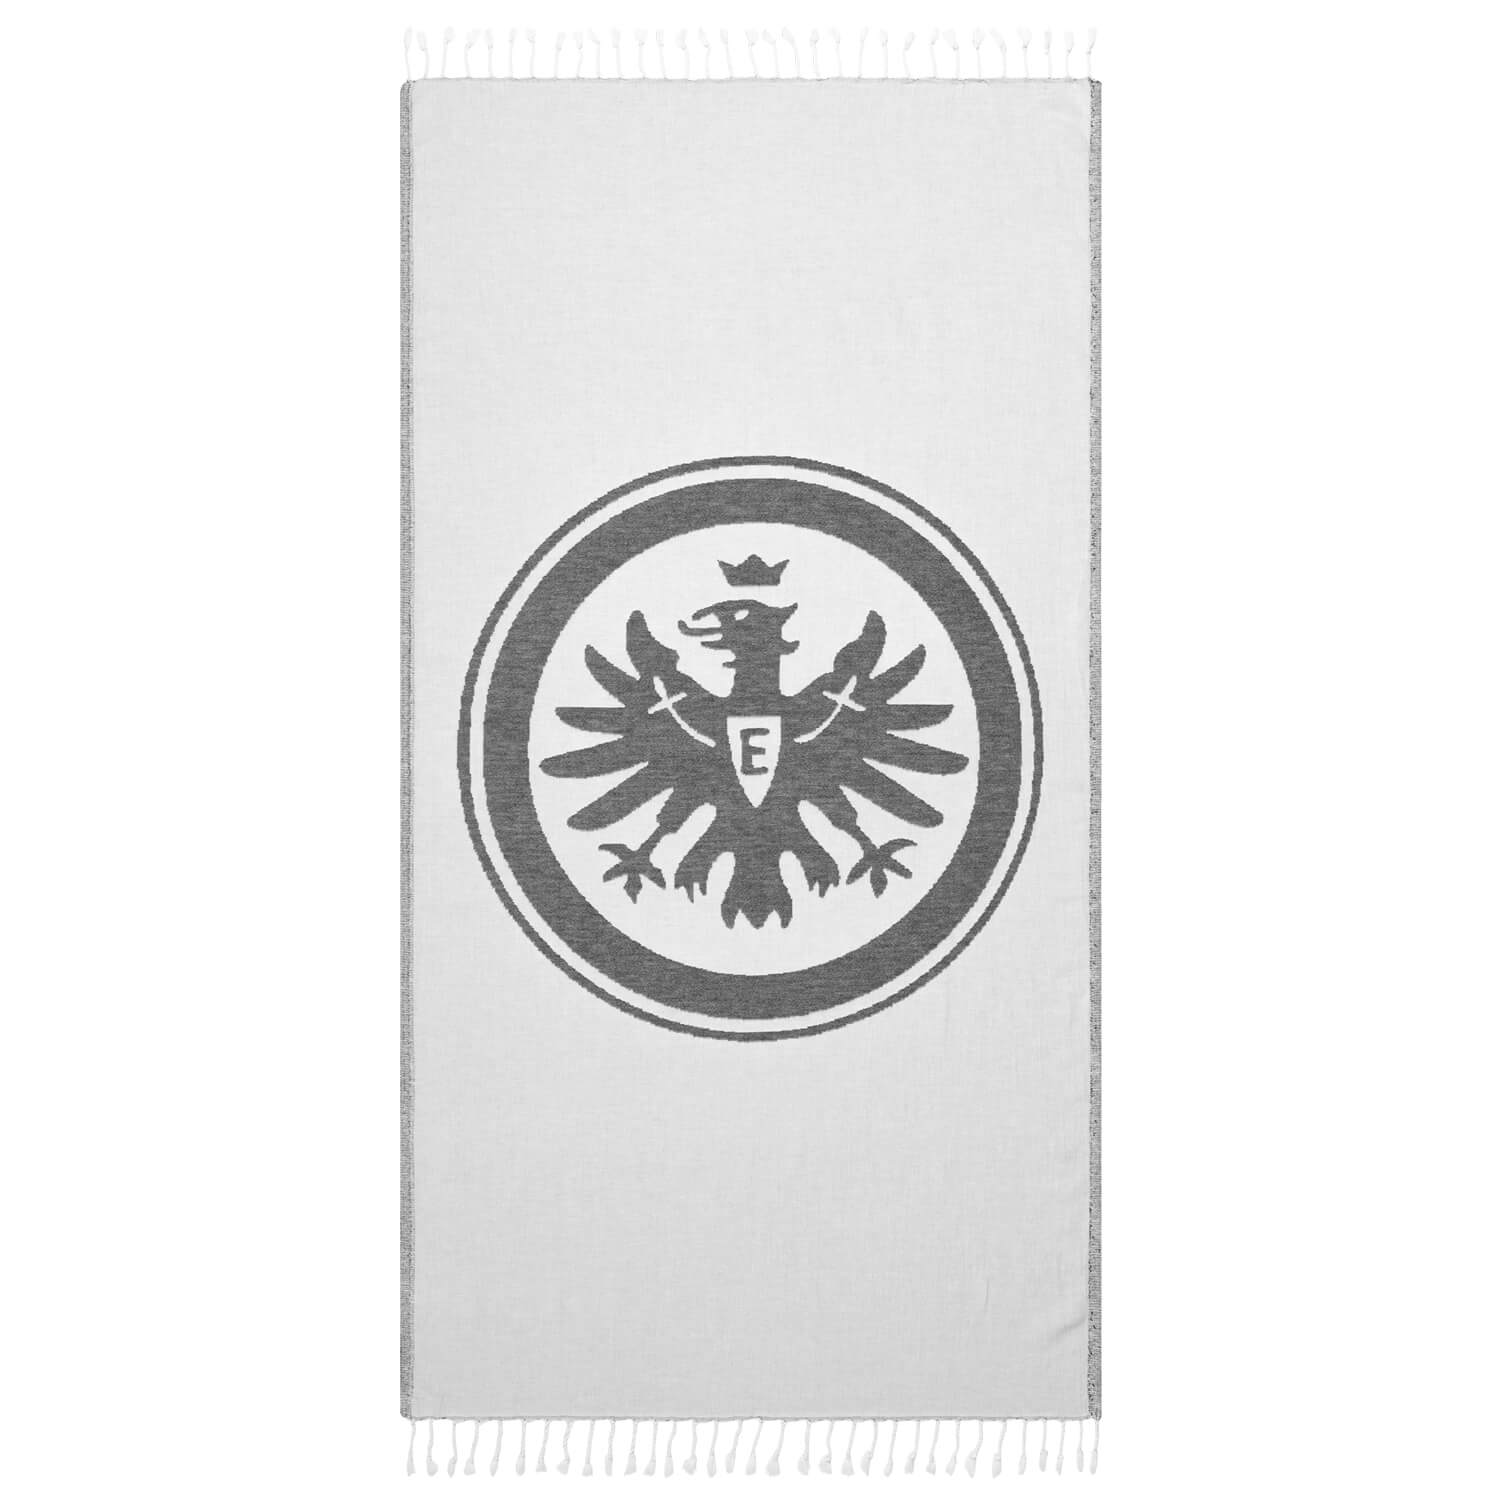 Bild 1: Peshta cloth Eintracht